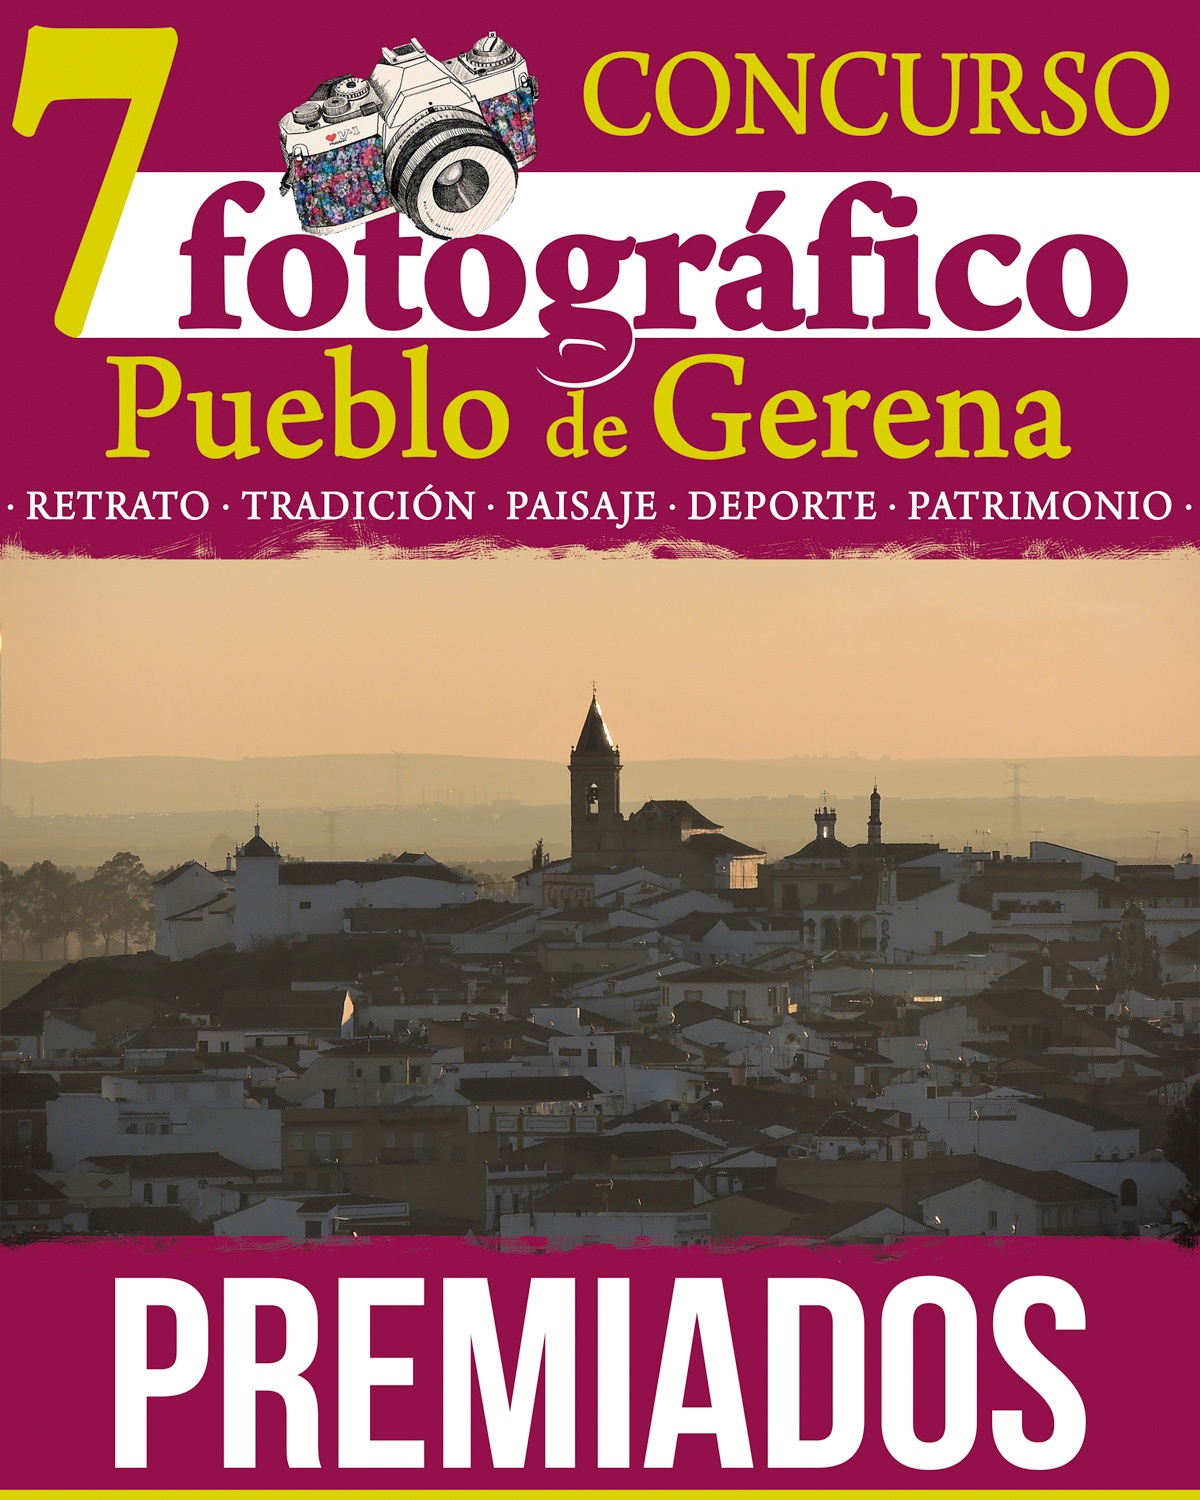 Premiados del 7º Concurso fotográfico Pueblo de Gerena